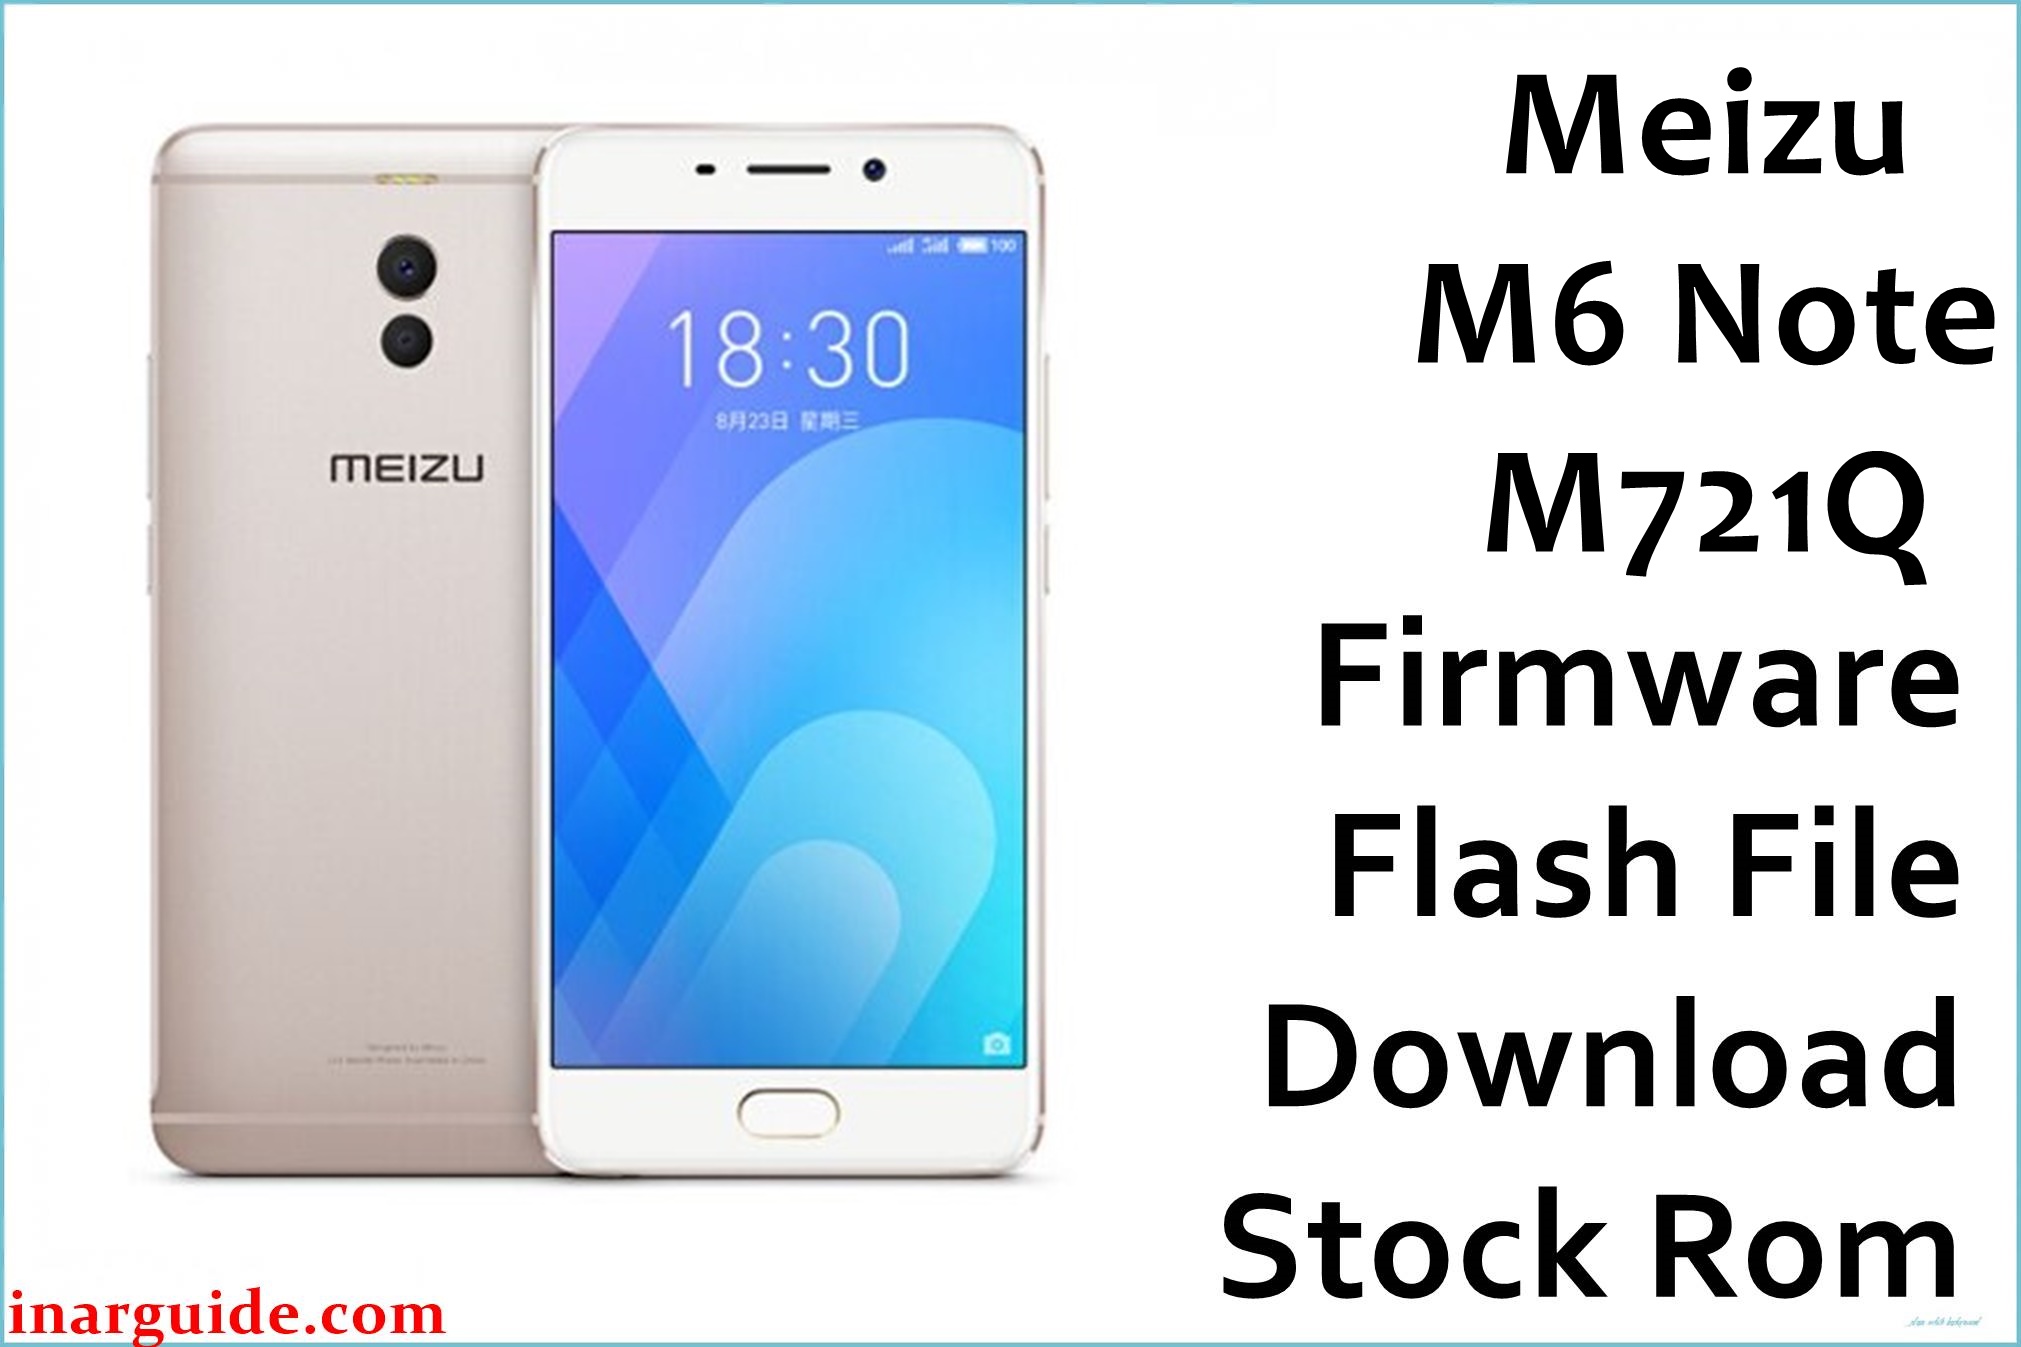 Meizu M6 Note M721Q